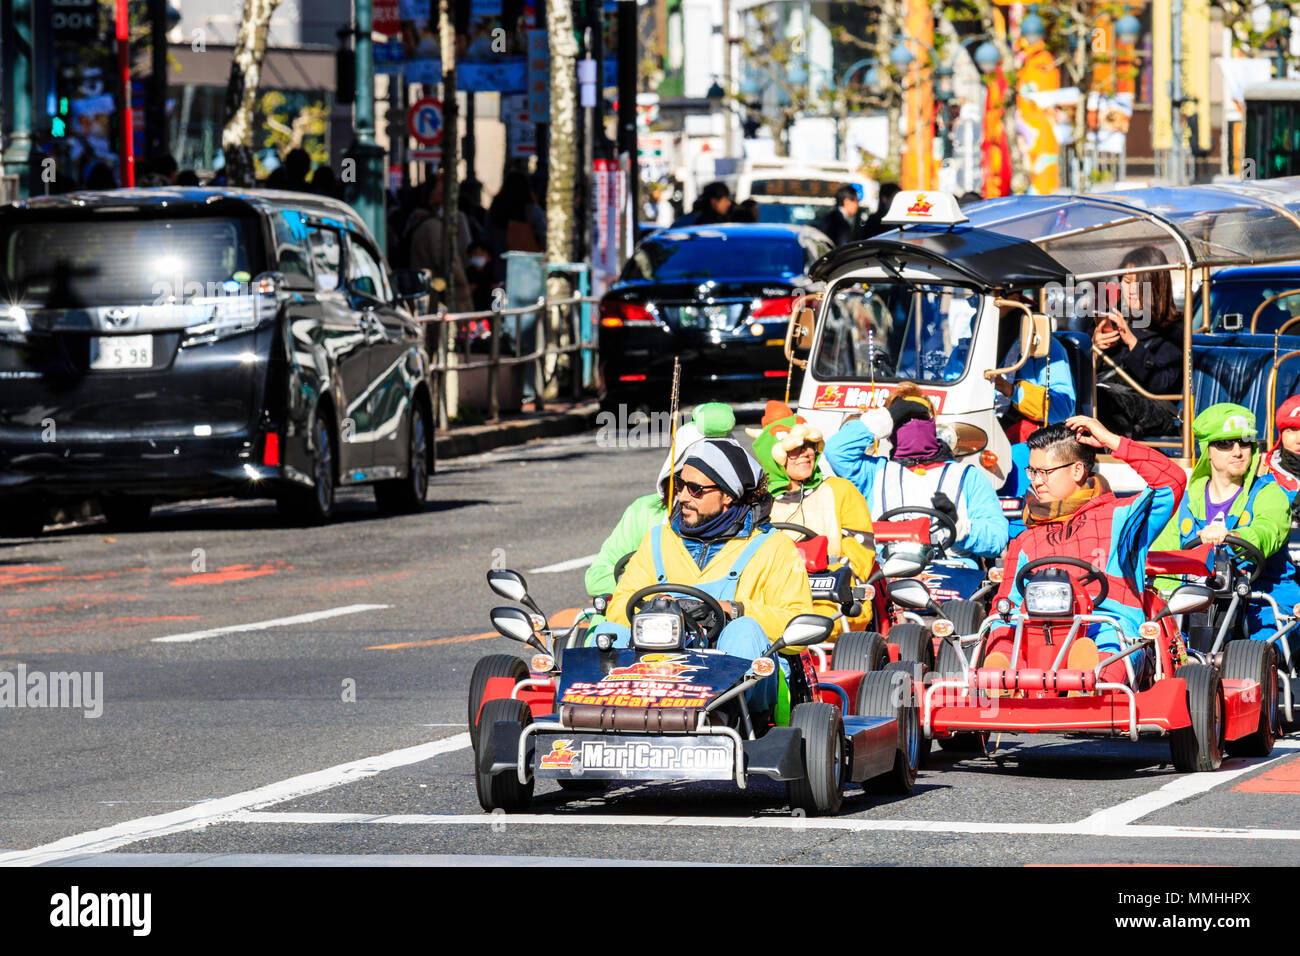 Tokio, Shibuya Crossing. Beliebte touristische Aktivität, treibende MariCars, Mario karts während als Mario Figuren gekleidet. Reihe an der Kreuzung warten. Stockfoto